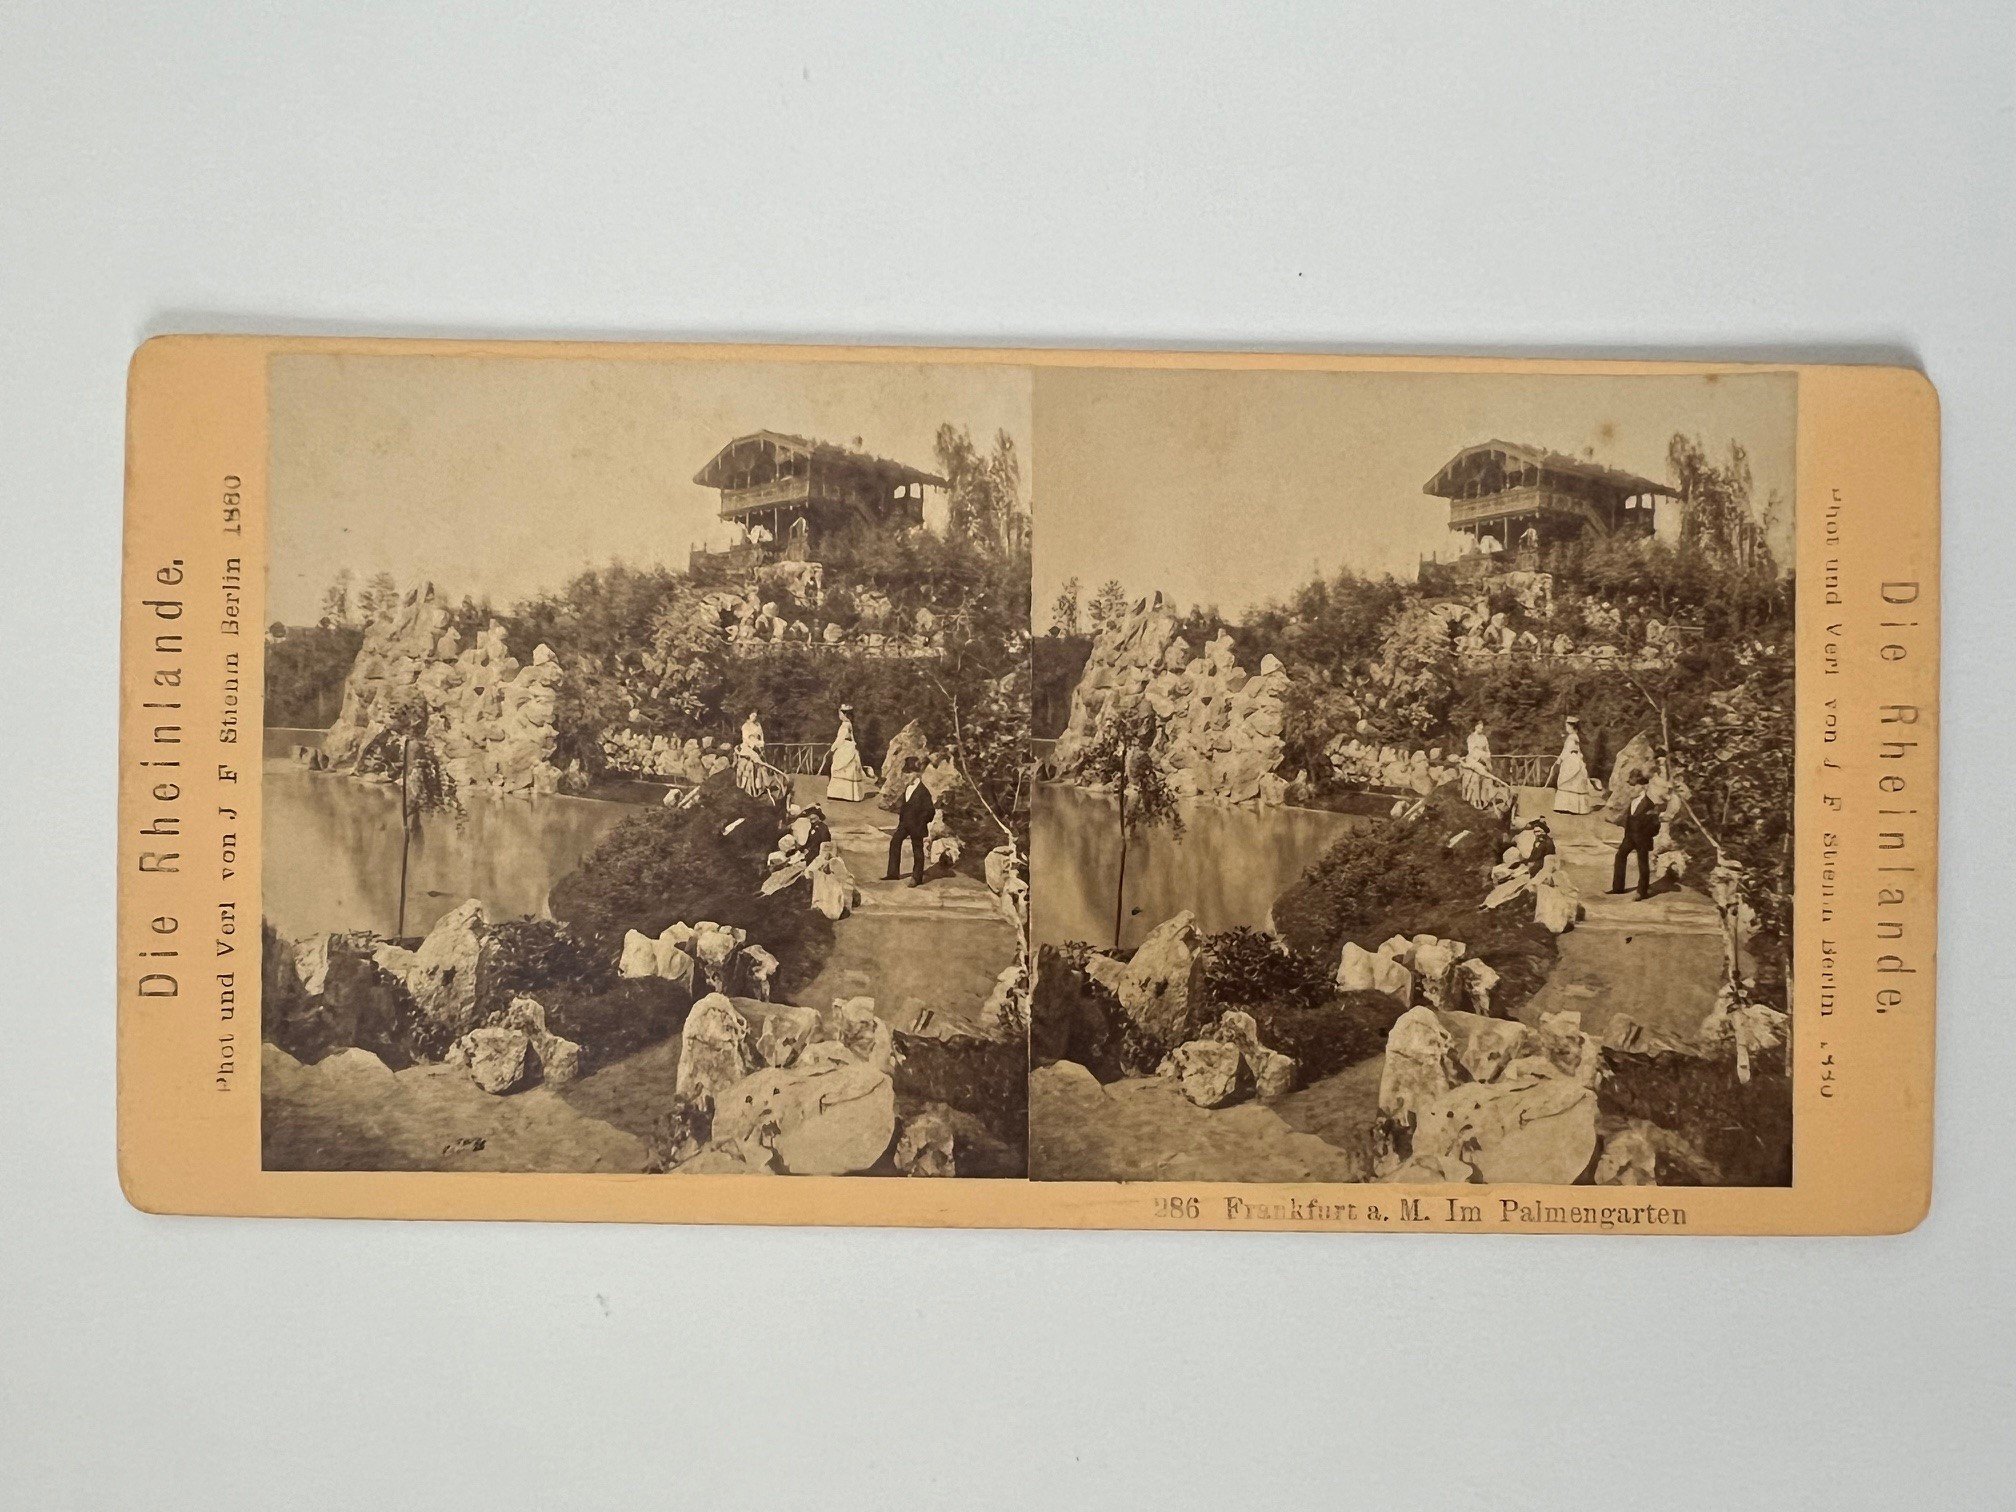 Stereobild, Johann Friedrich Stiehm, Frankfurt, Nr. 286, Im Palmengarten, 1880. (Taunus-Rhein-Main - Regionalgeschichtliche Sammlung Dr. Stefan Naas CC BY-NC-SA)